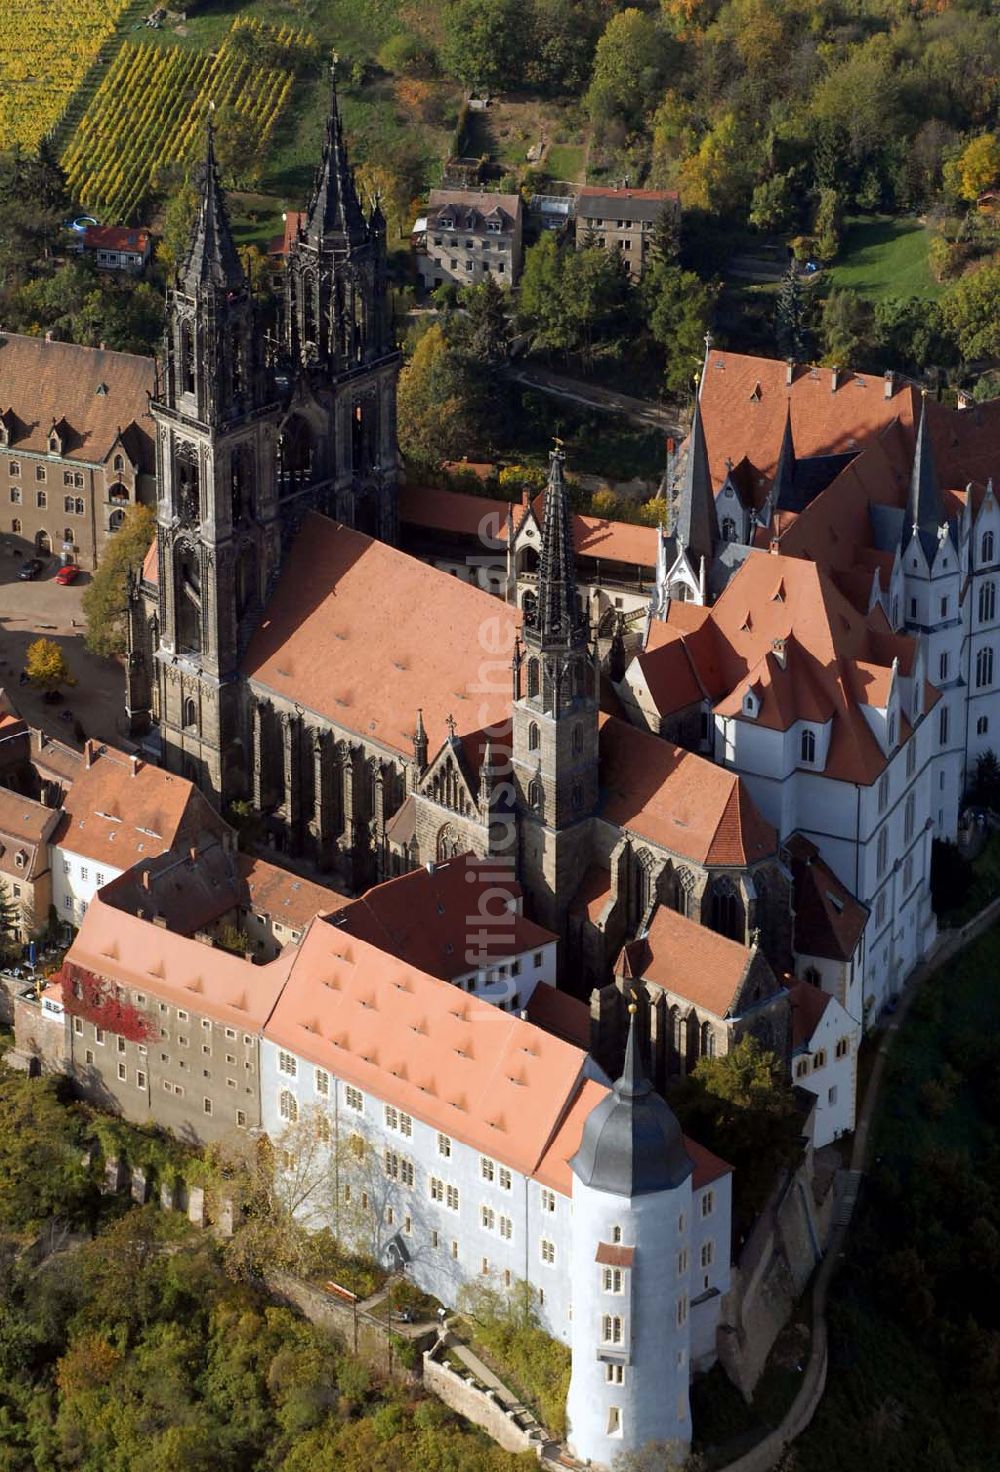 Luftbild Meißen - Albrechtsburg in Meissen